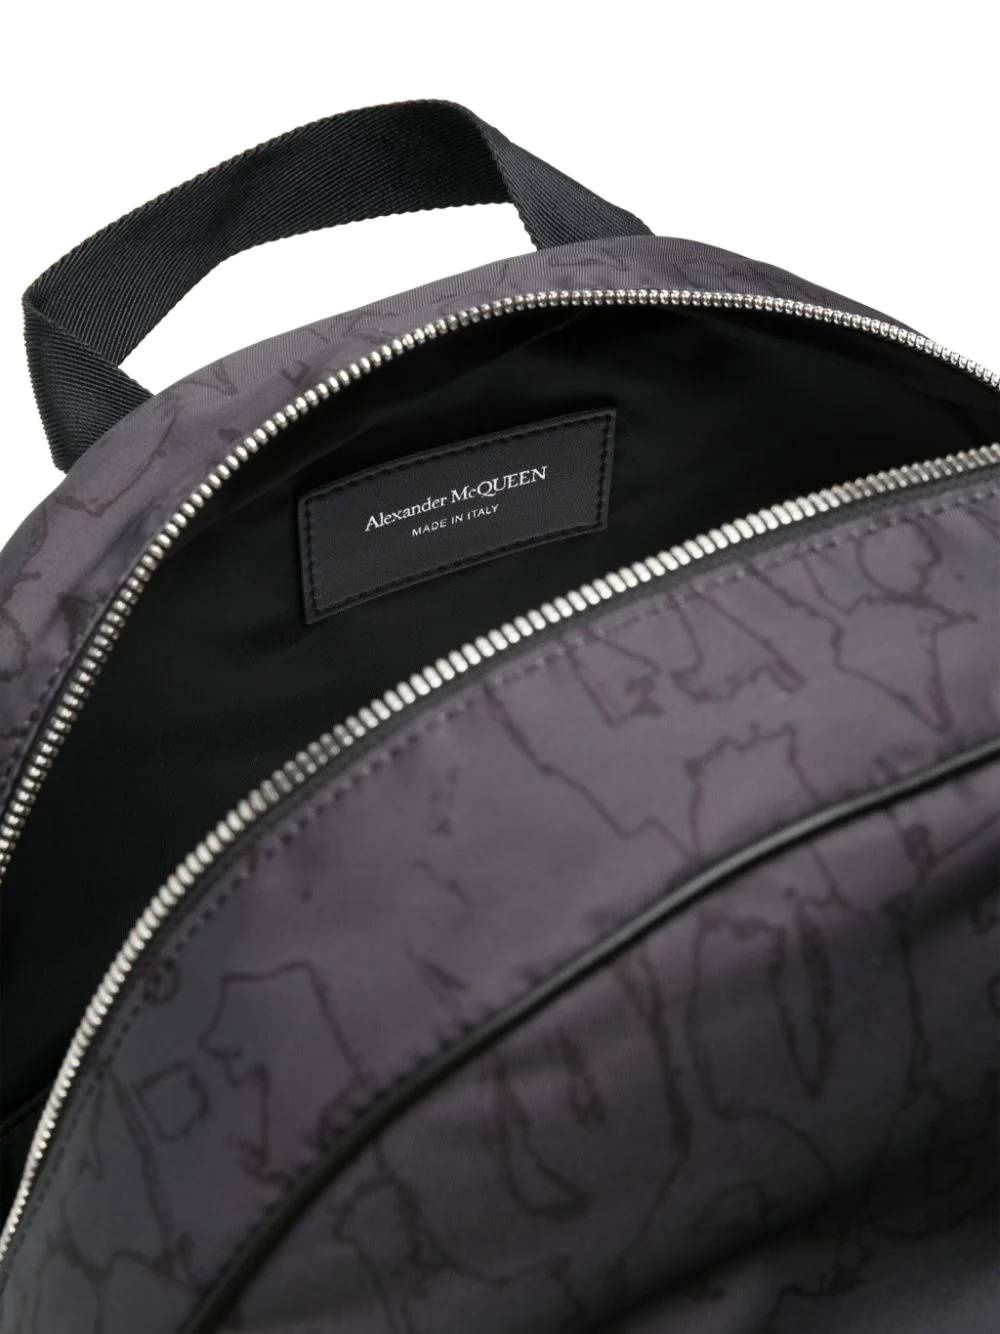 Alexander McQueen Bags... Black